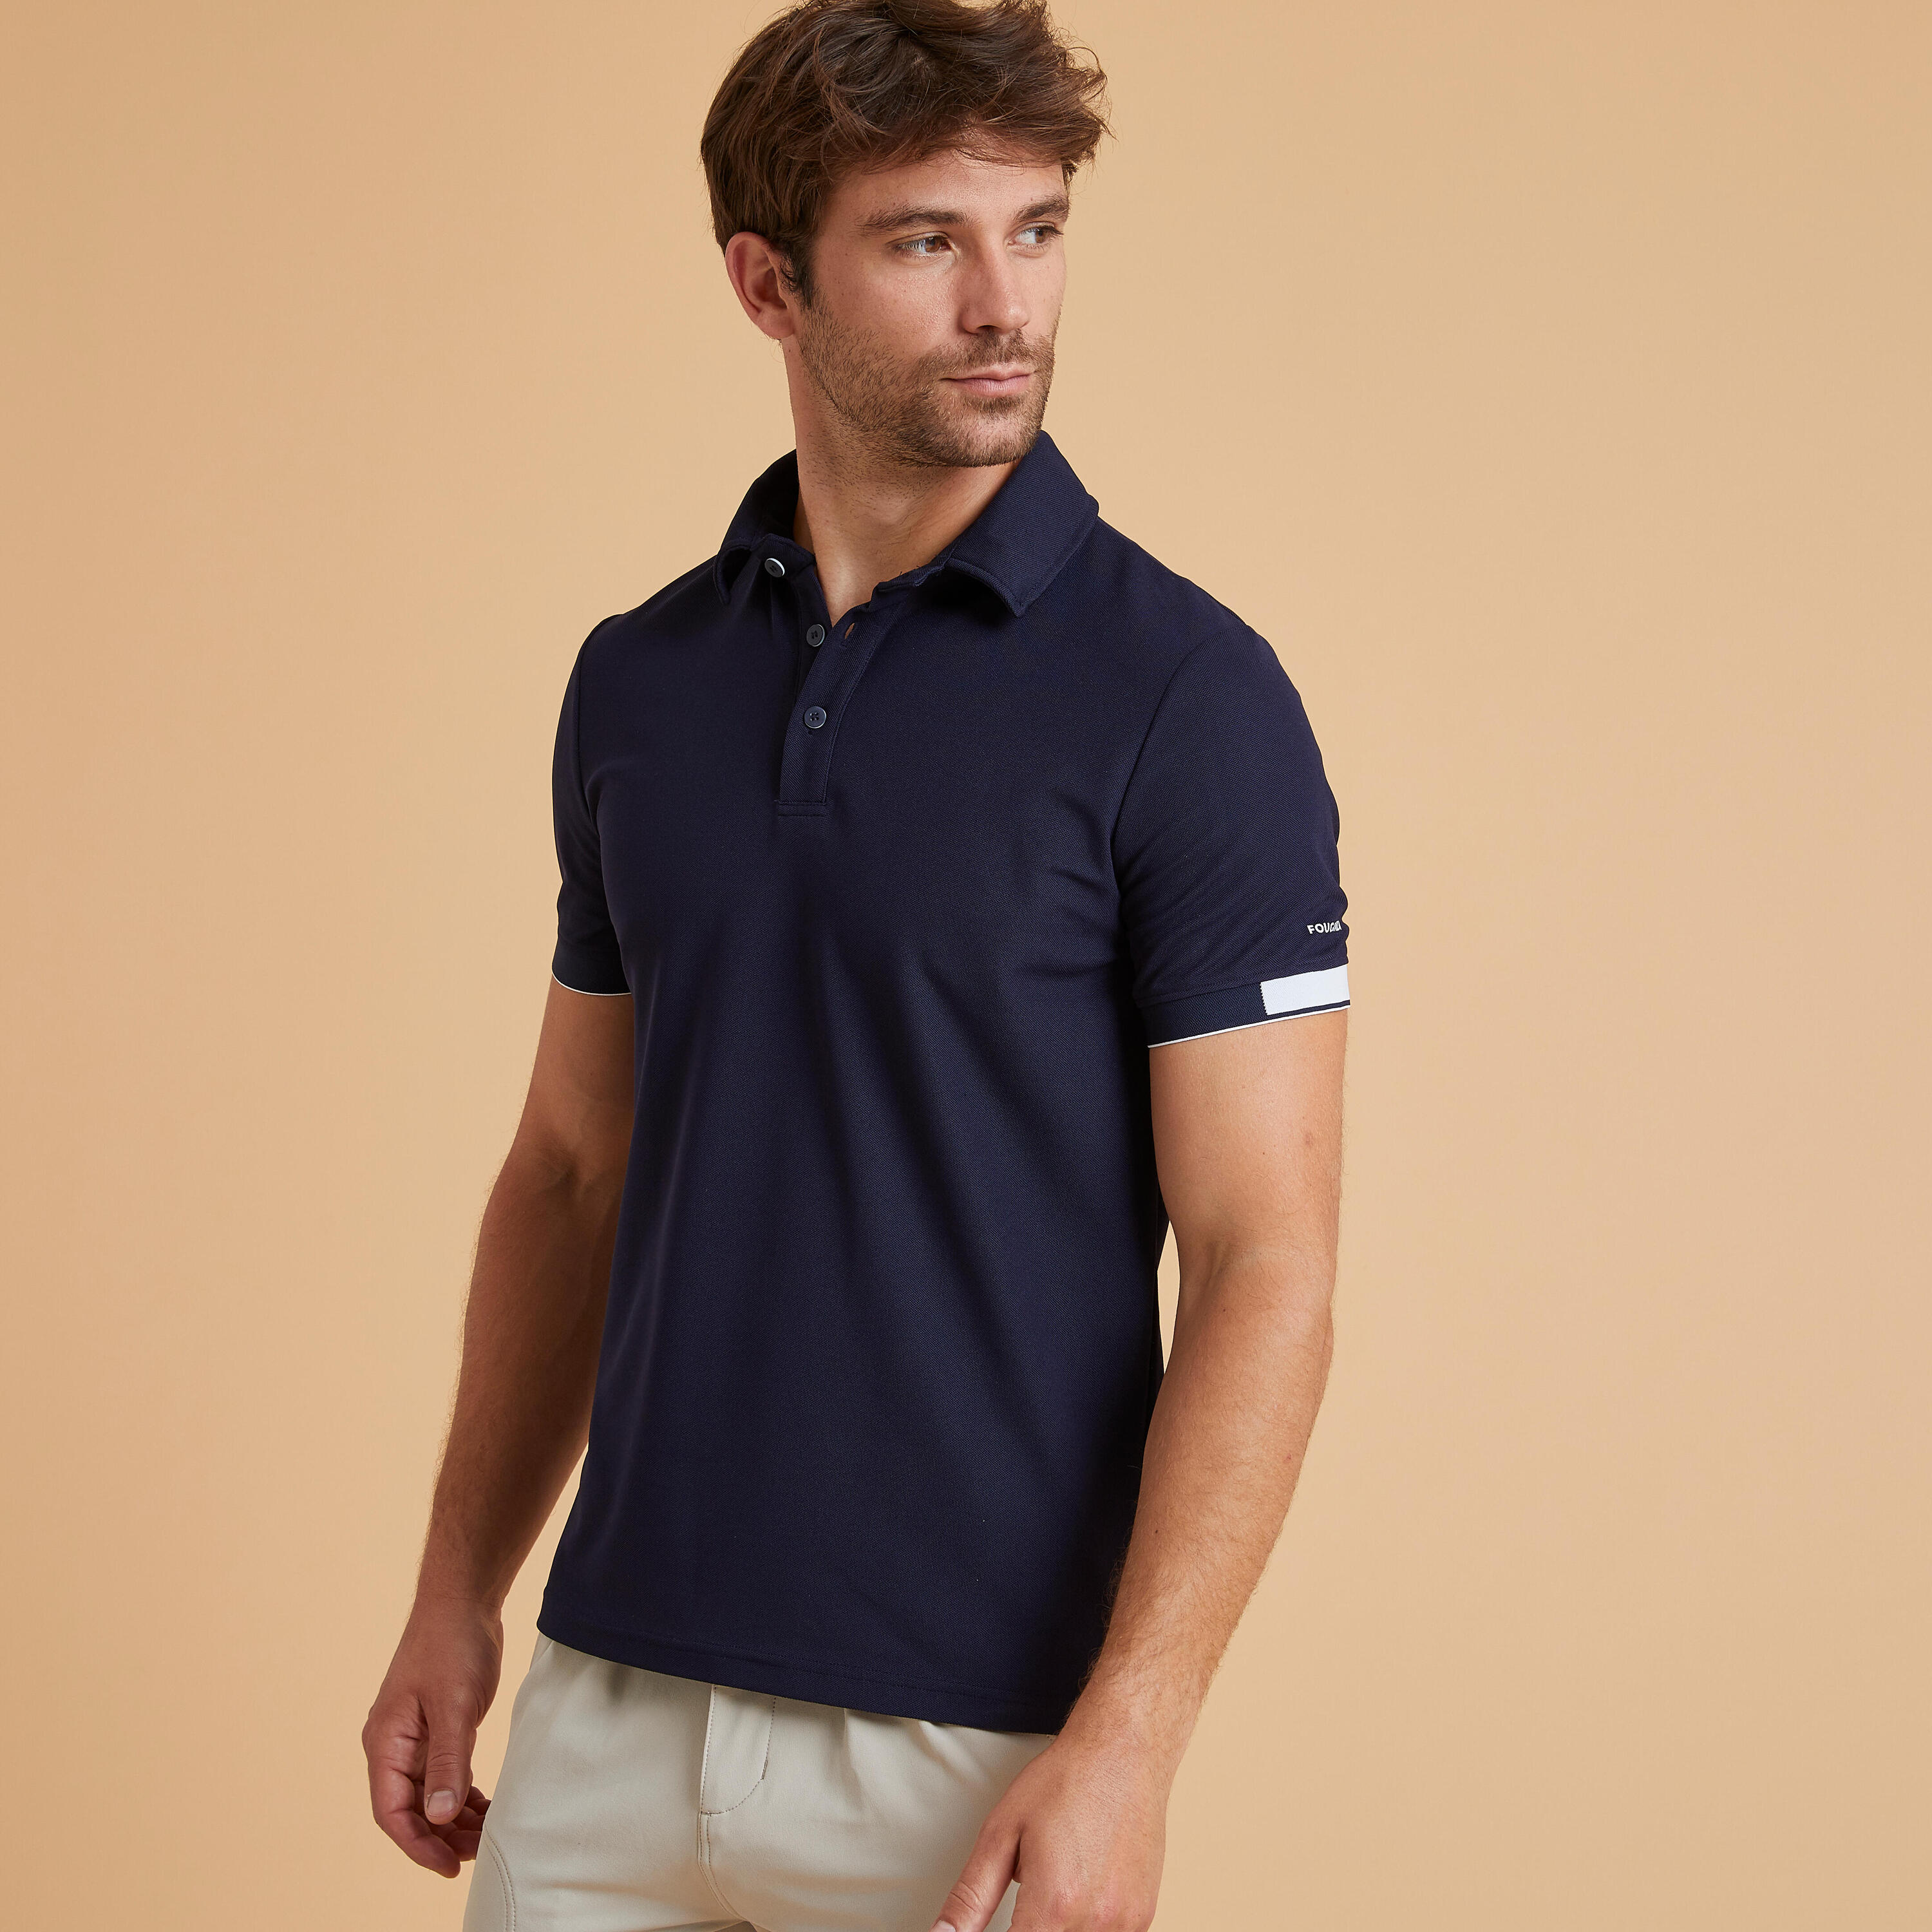 Рубашка-поло Fouganza для верховой езды мужская, синий рубашка поло для верховой езды мужская одежда топ с коротким рукавом для верховой езды летняя хлопковая футболка мужская футболка одежд